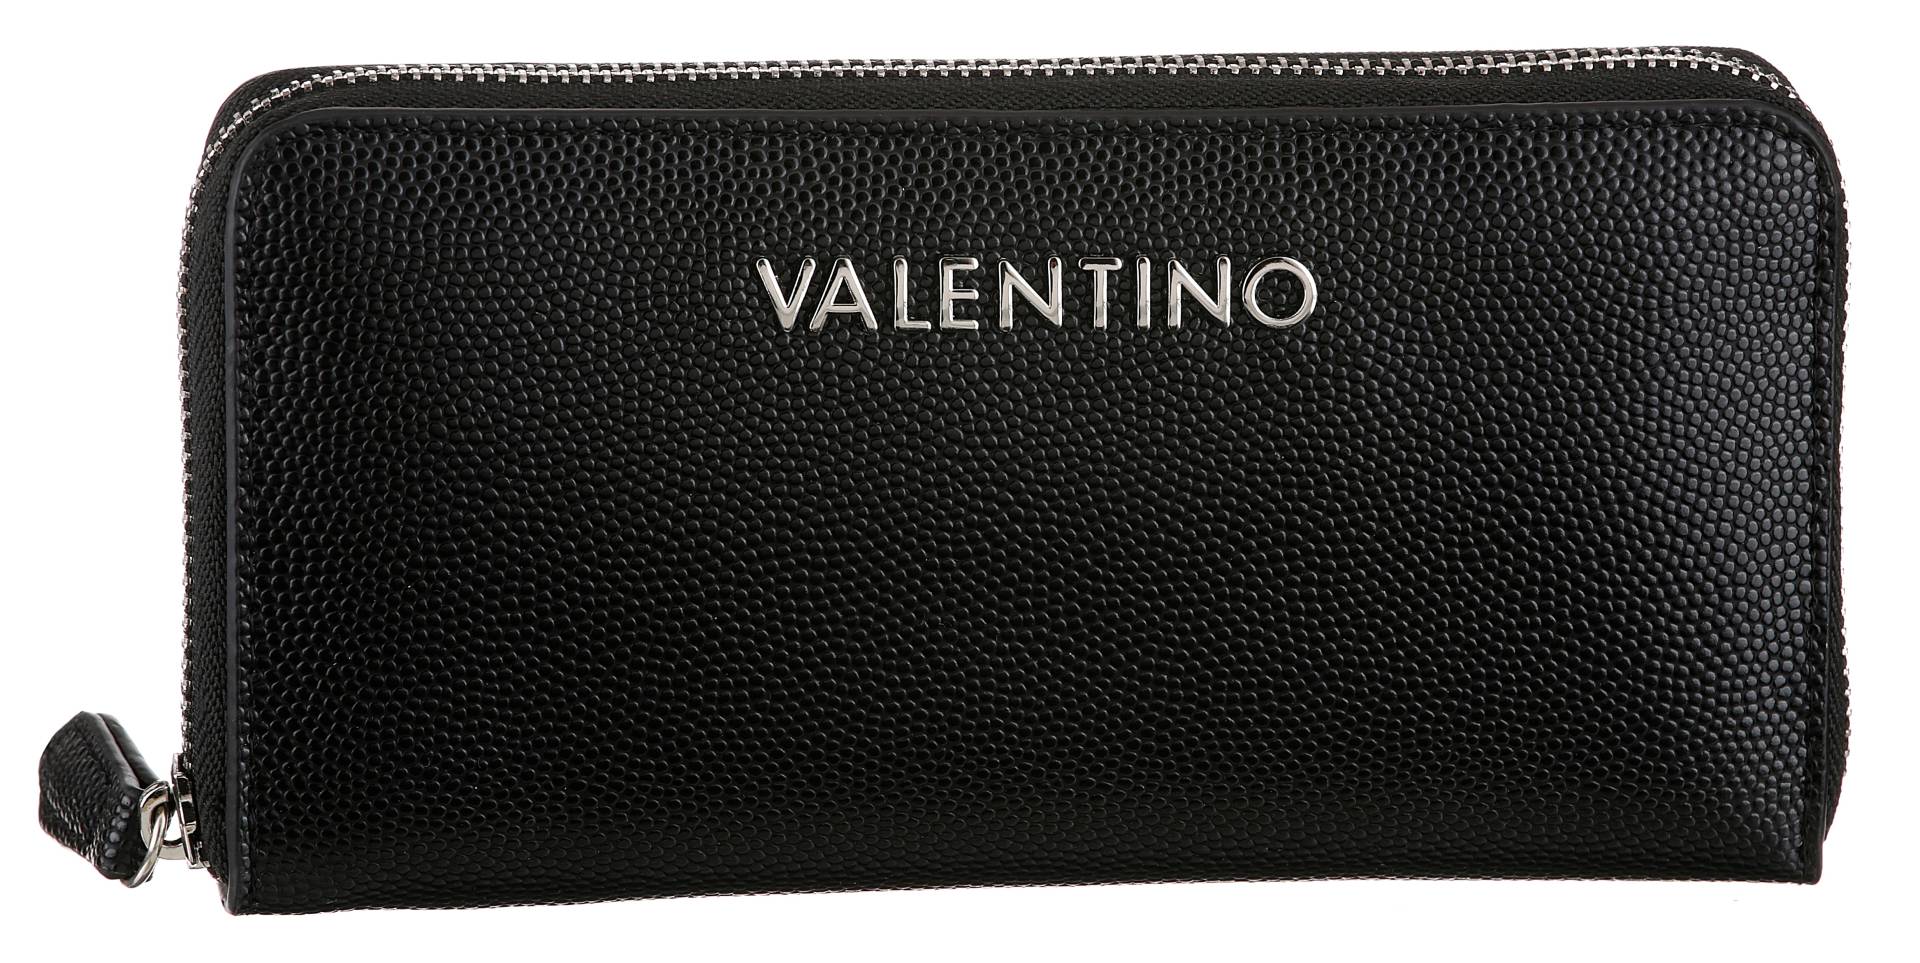 VALENTINO BAGS Geldbörse "DIVINA", Geldbeutel Portemonnaie Damenbörse von Valentino Bags